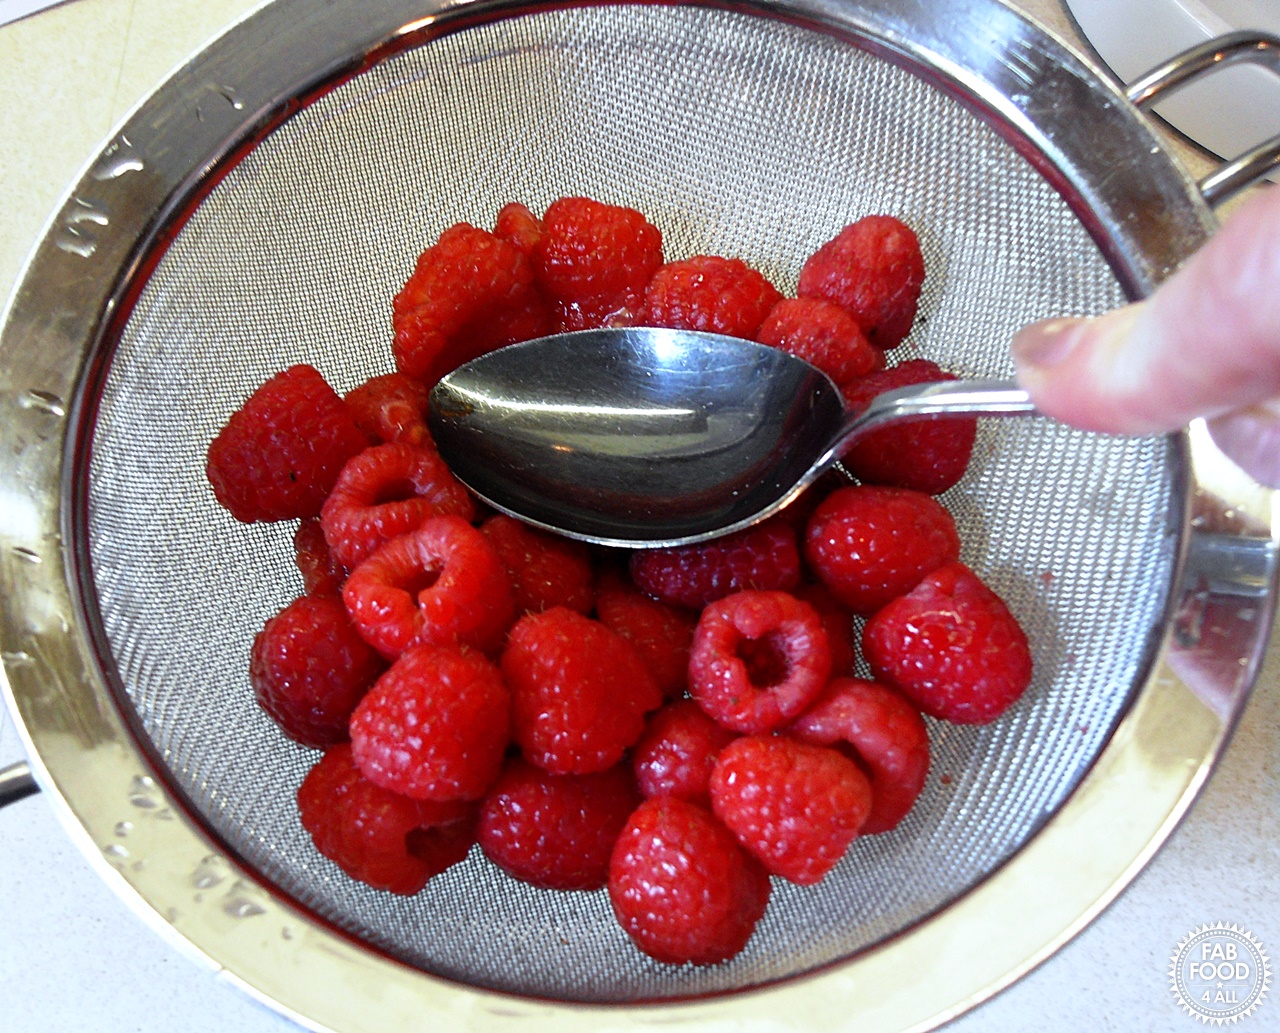 Raspberries being sieved.